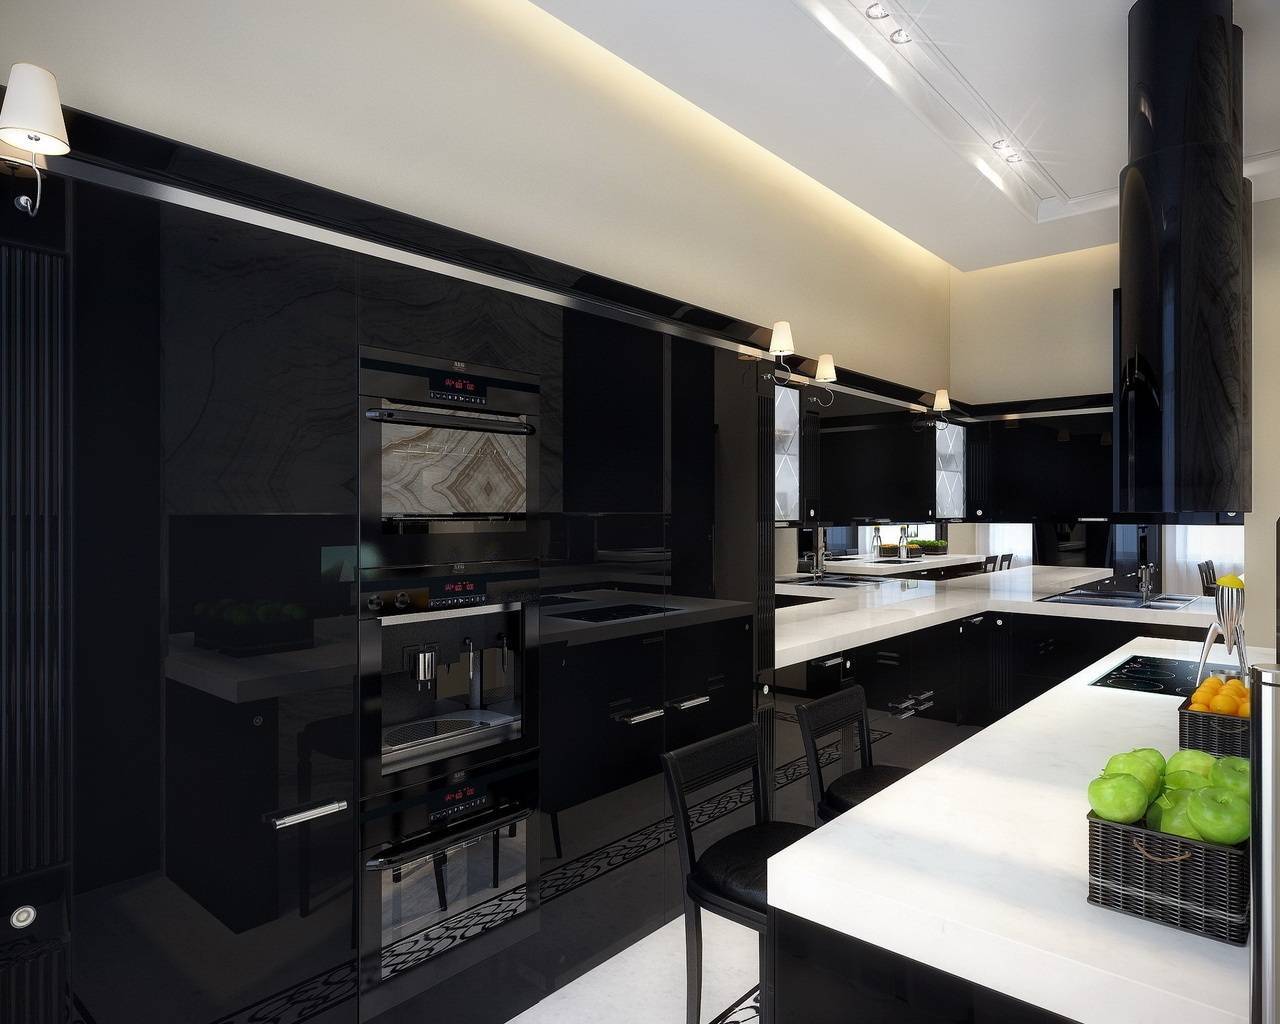 Черная кухня: дизайн кухонного гарнитура и сочетание с классическим интерьером